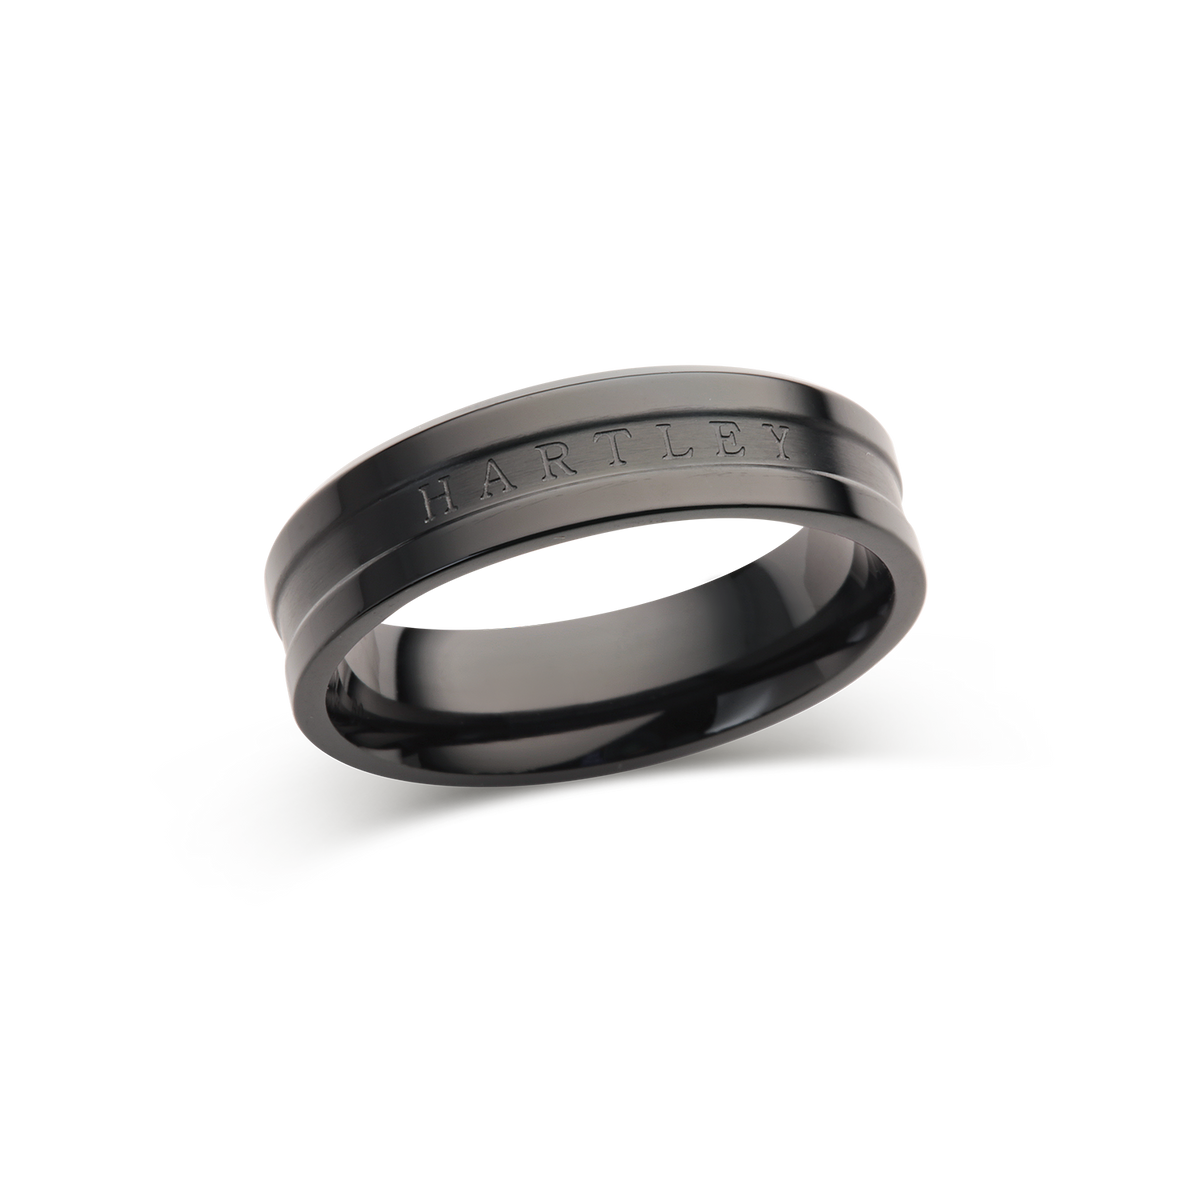 Hartley Black Elegance Ring